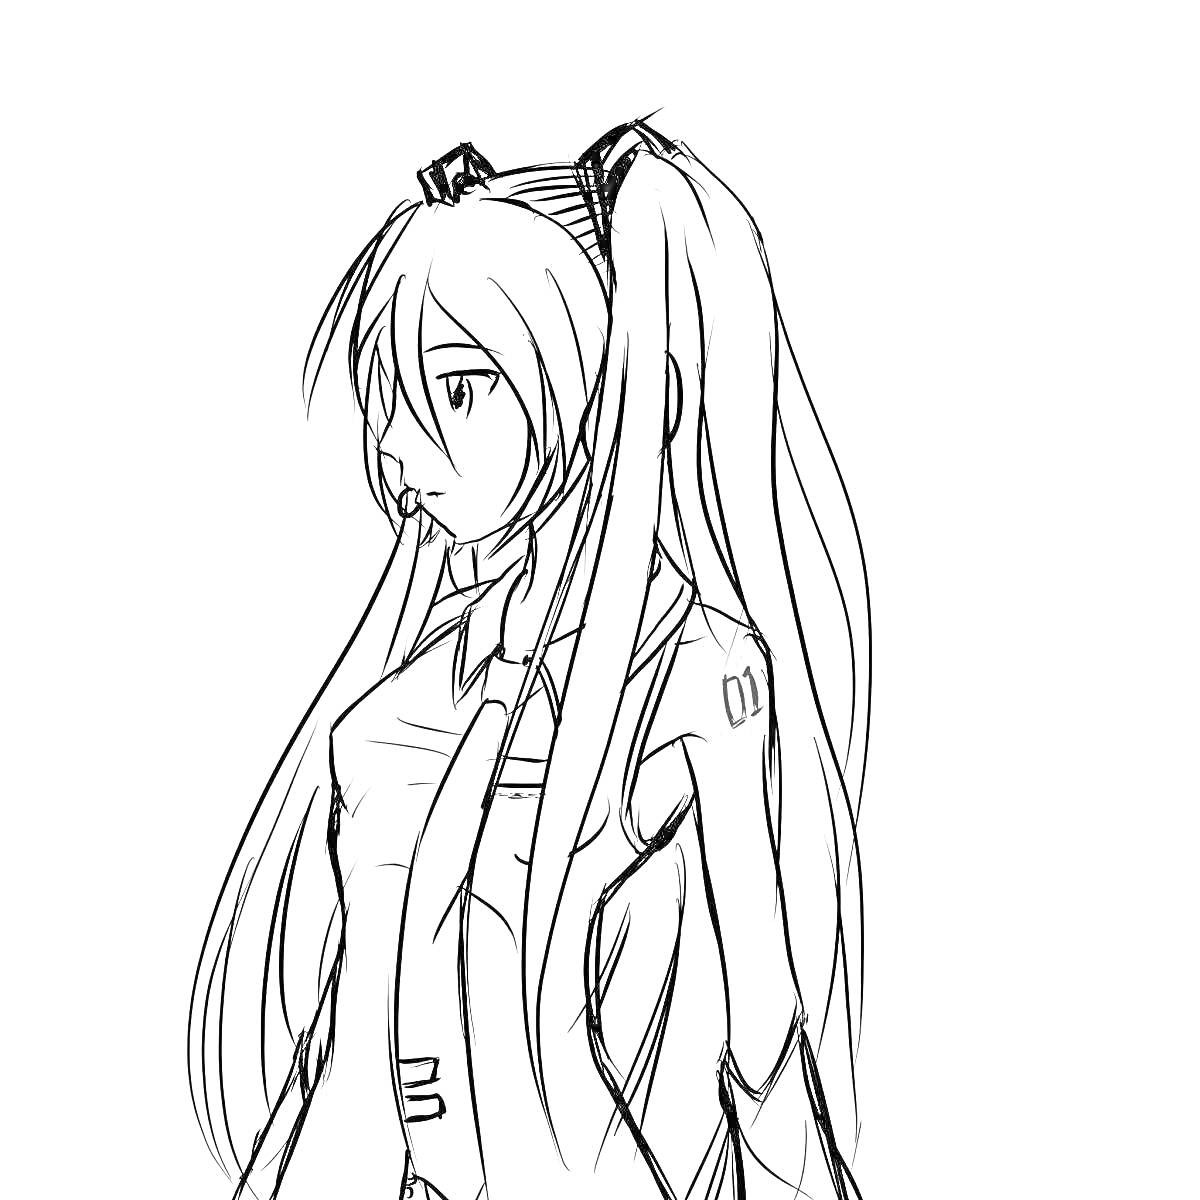 Хацунэ Мику с длинными волосами, в профиль, в школьной форме с галстуком